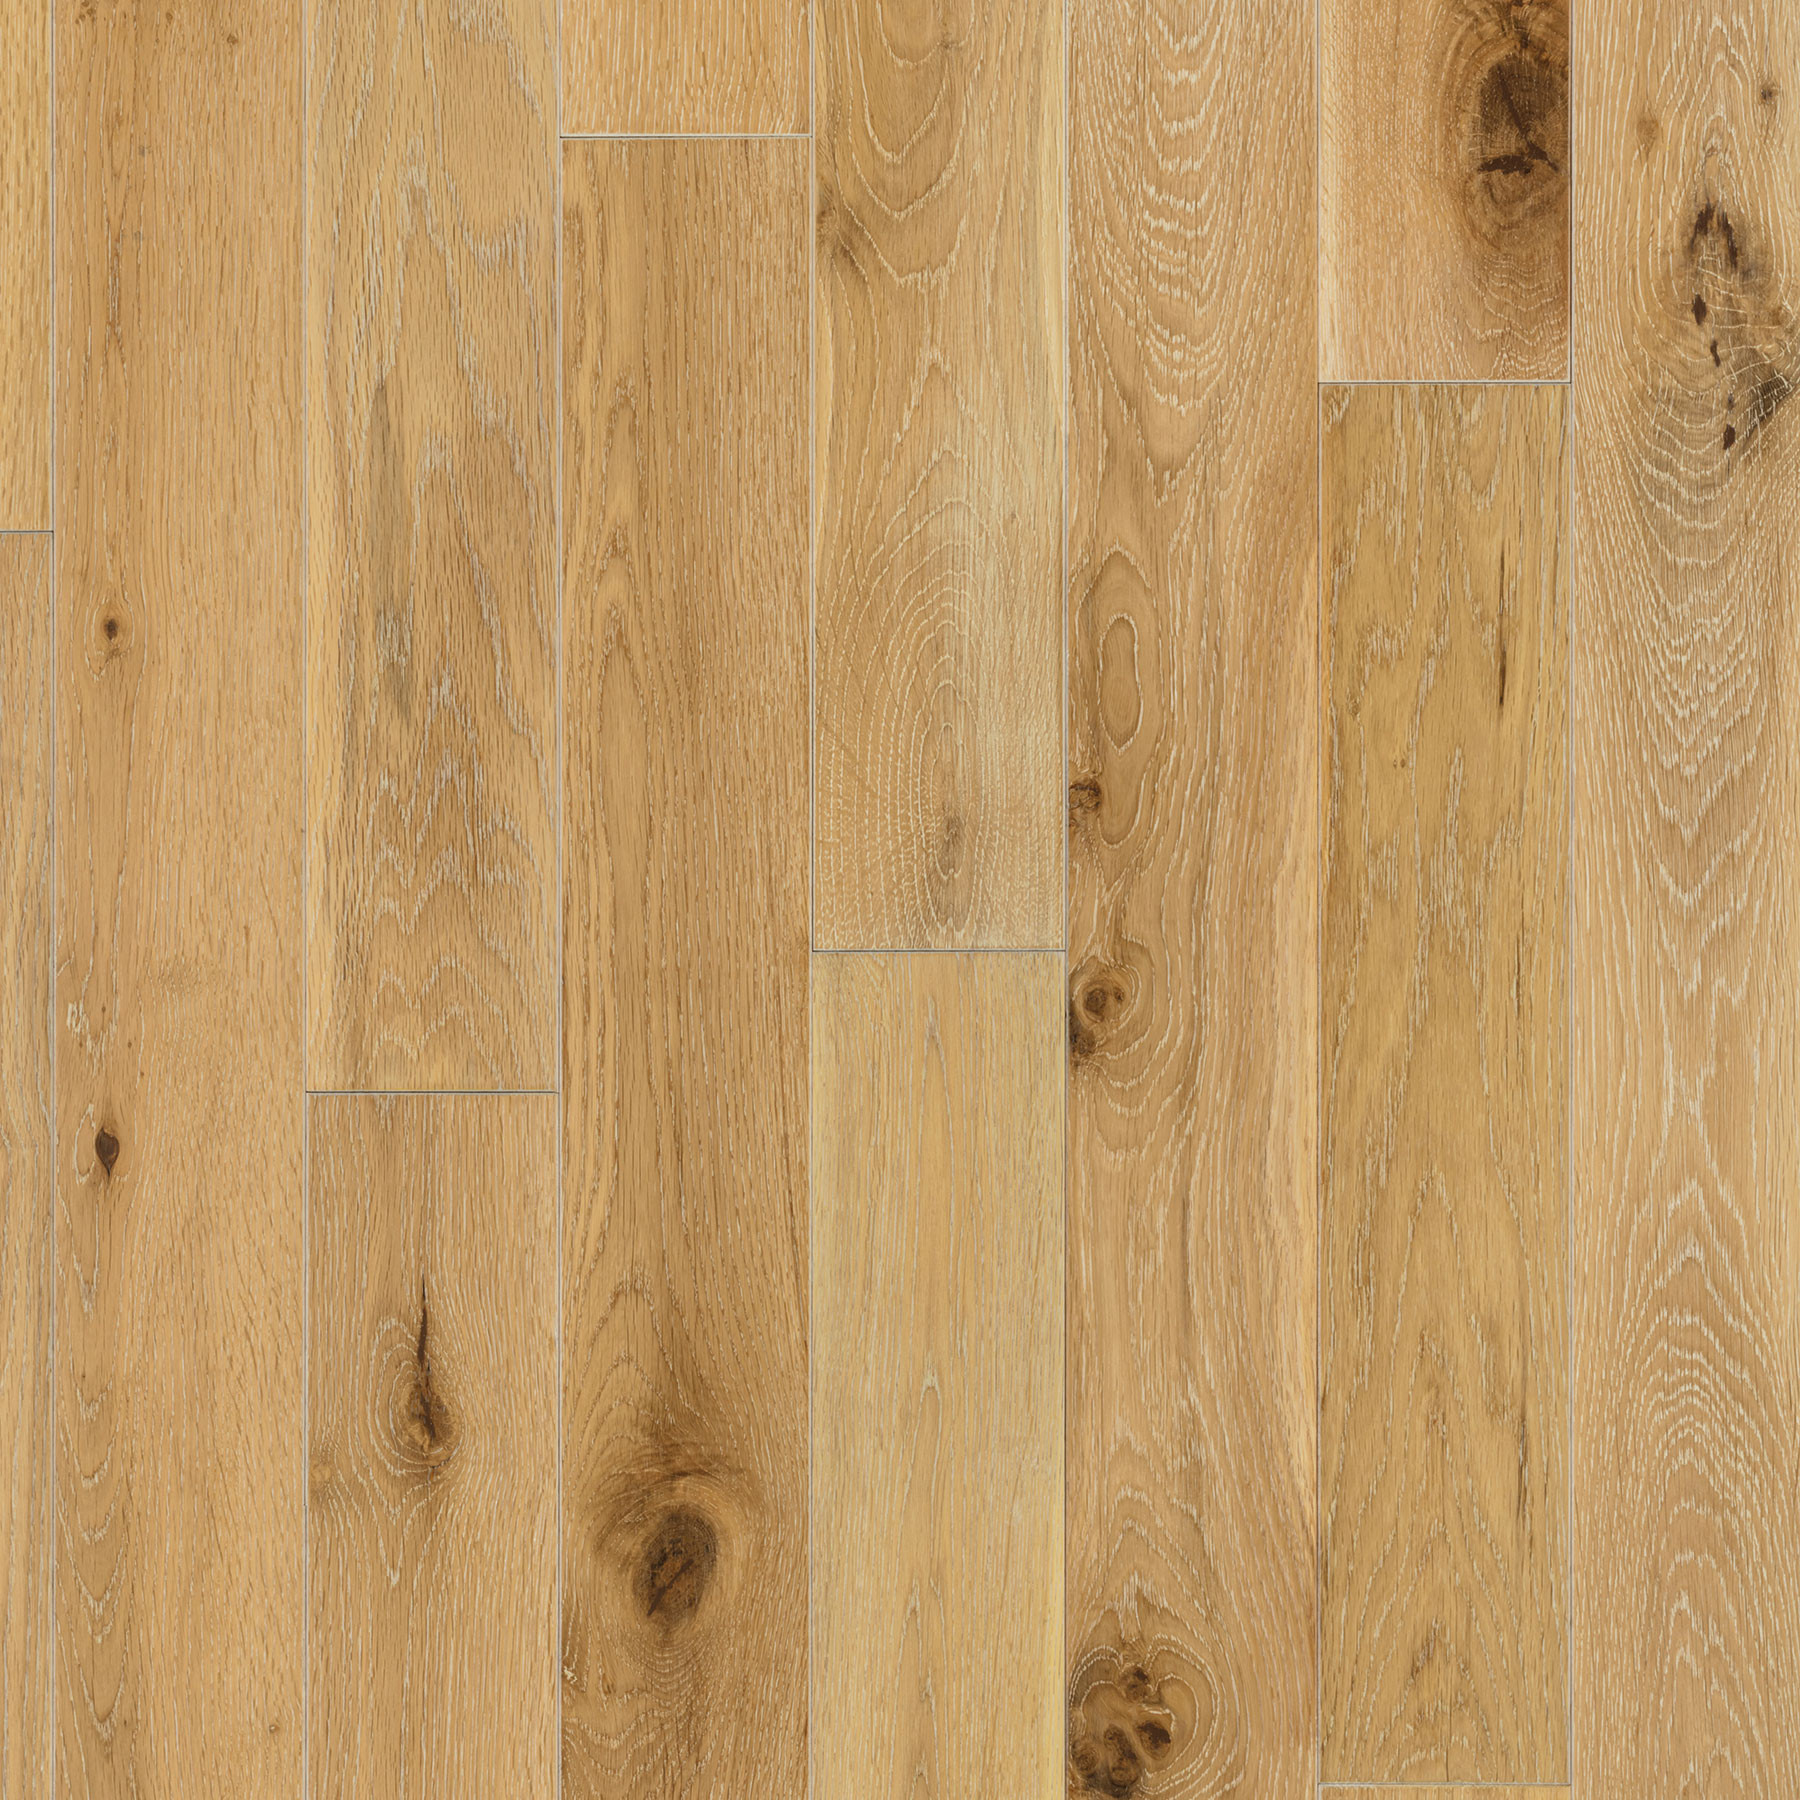 29 Elegant Janka Rating for Hardwood Floors 2024 free download janka rating for hardwood floors of harbor oak 3 1 2e280b3 white oak white washed etx surfaces pertaining to etx